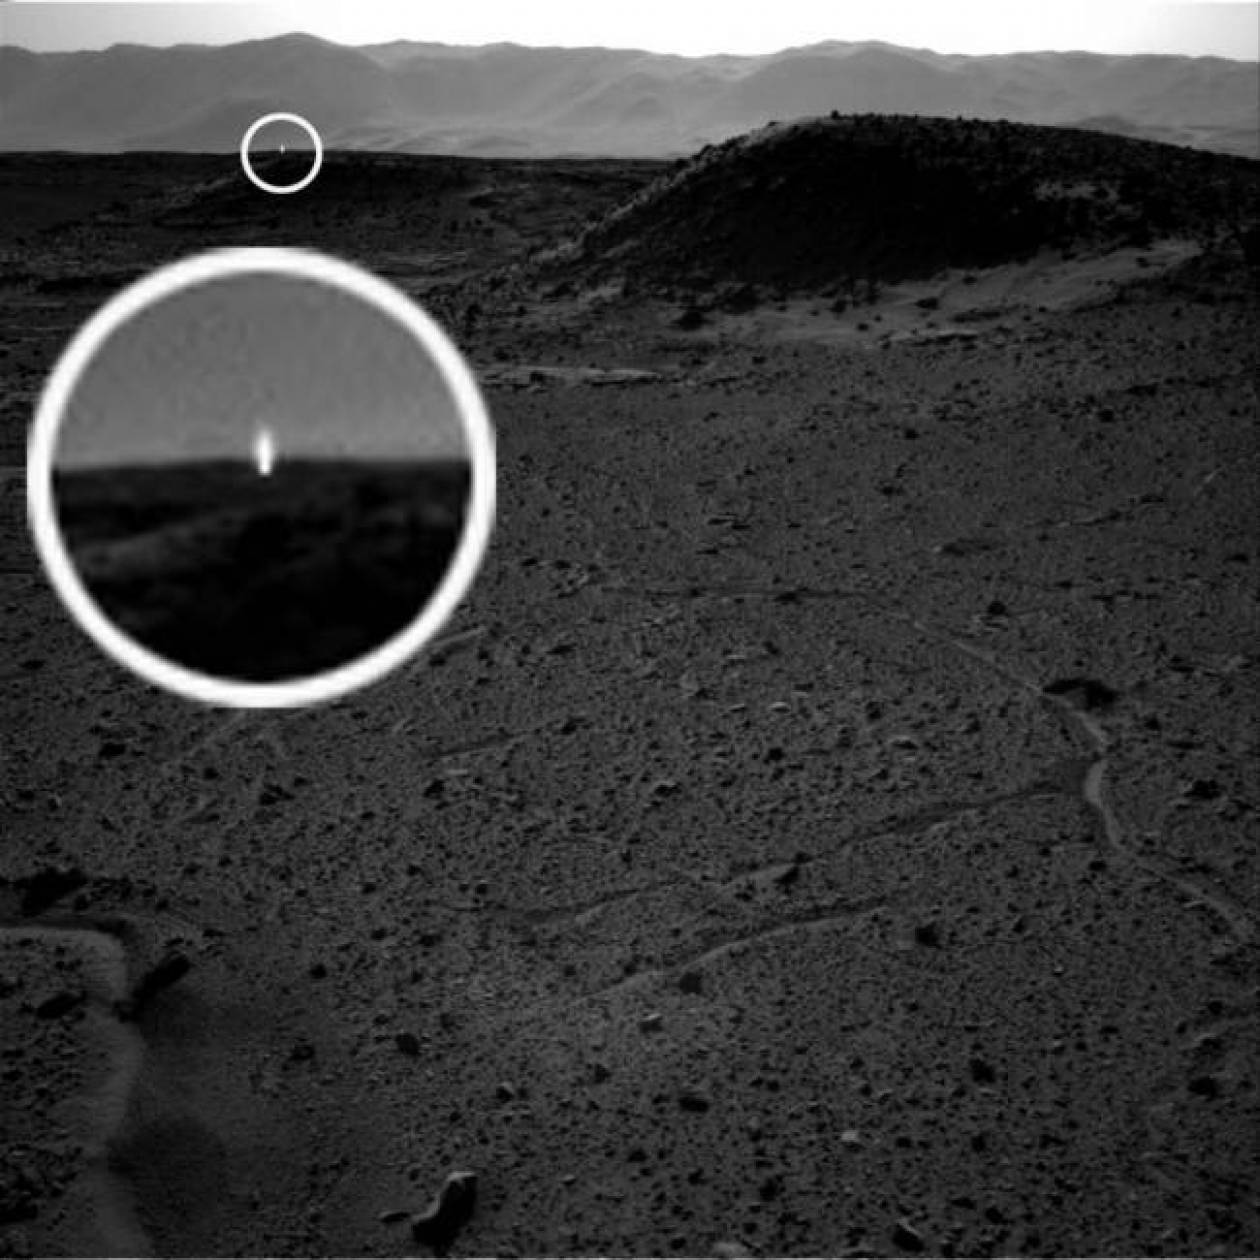 Μήπως αυτό το μυστήριο φως αποδεικνύει την ύπαρξη ζωής στον Άρη;